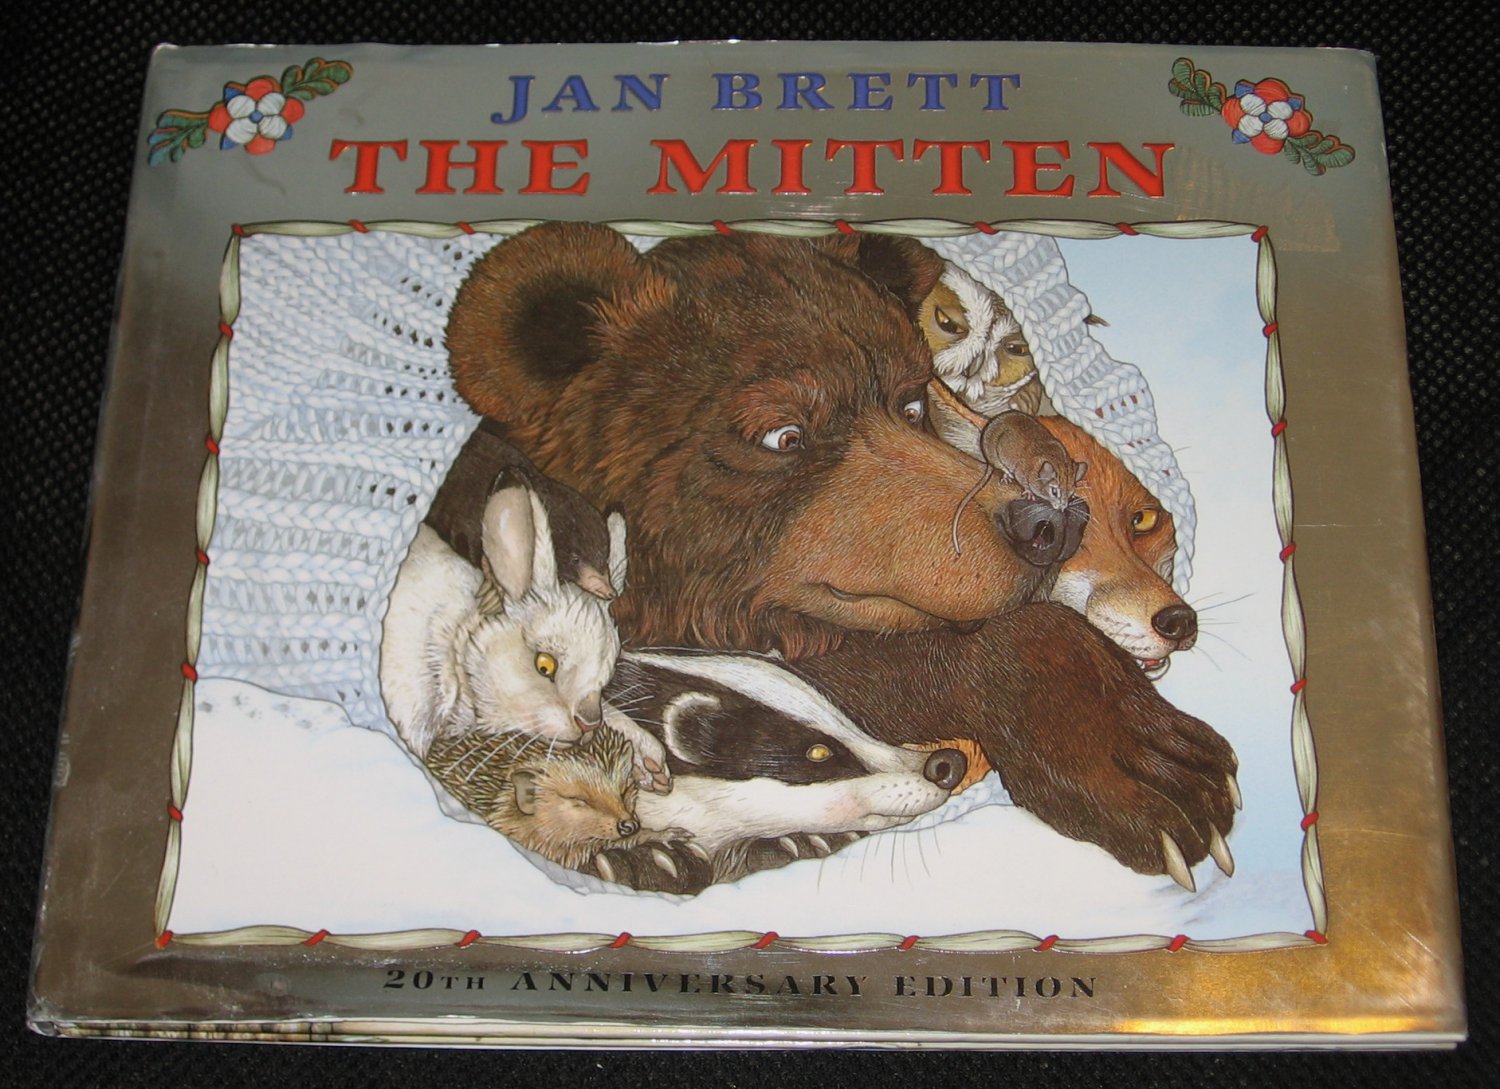 the mitten by jan brett